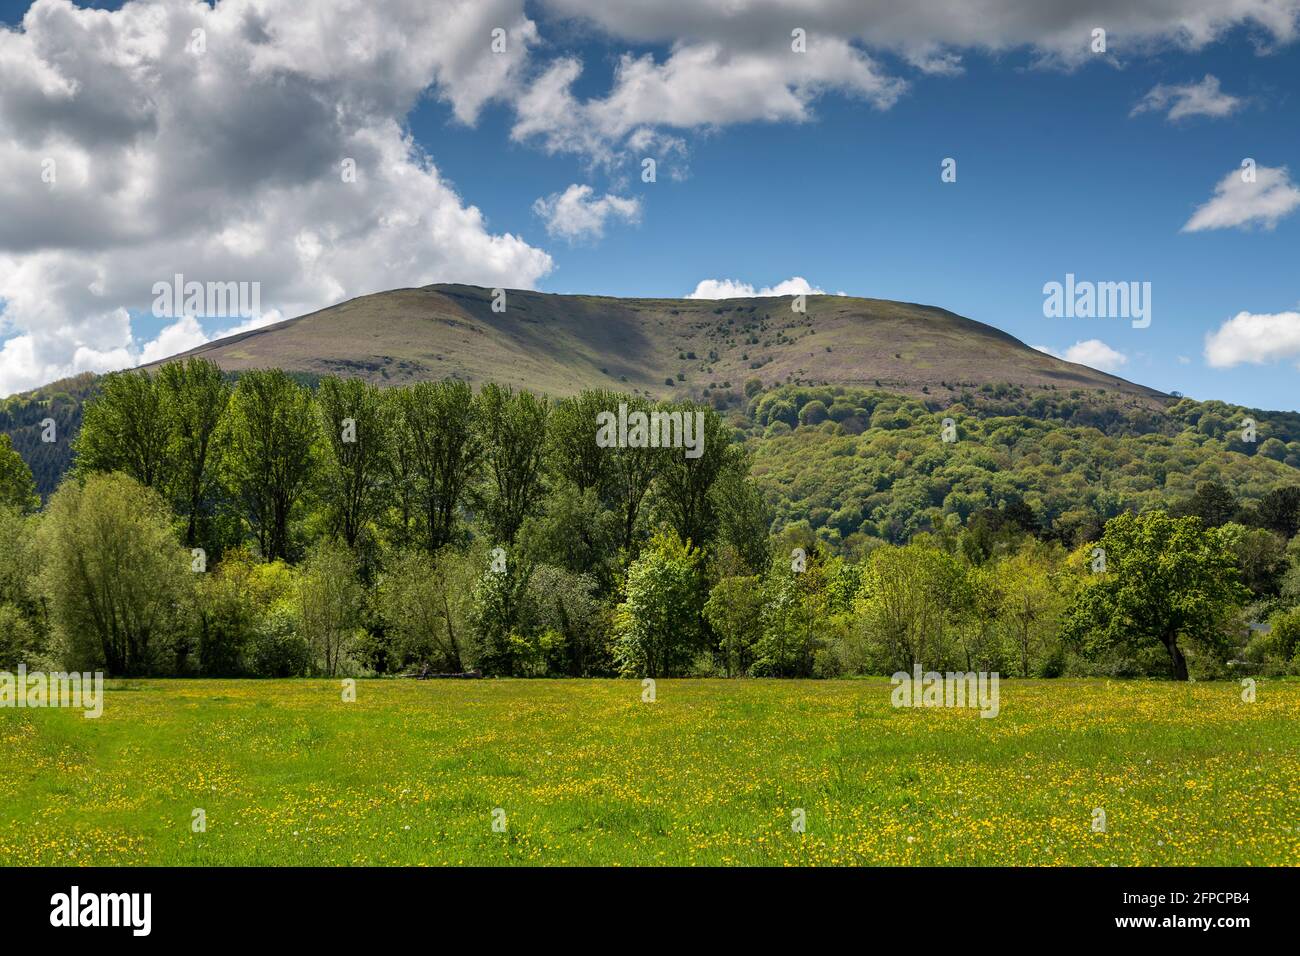 La montagne de Blorenge surplombant Castle Meadows et la rivière Usk près d'Abergavenny, Monbucshire, pays de Galles du Sud, Royaume-Uni Banque D'Images